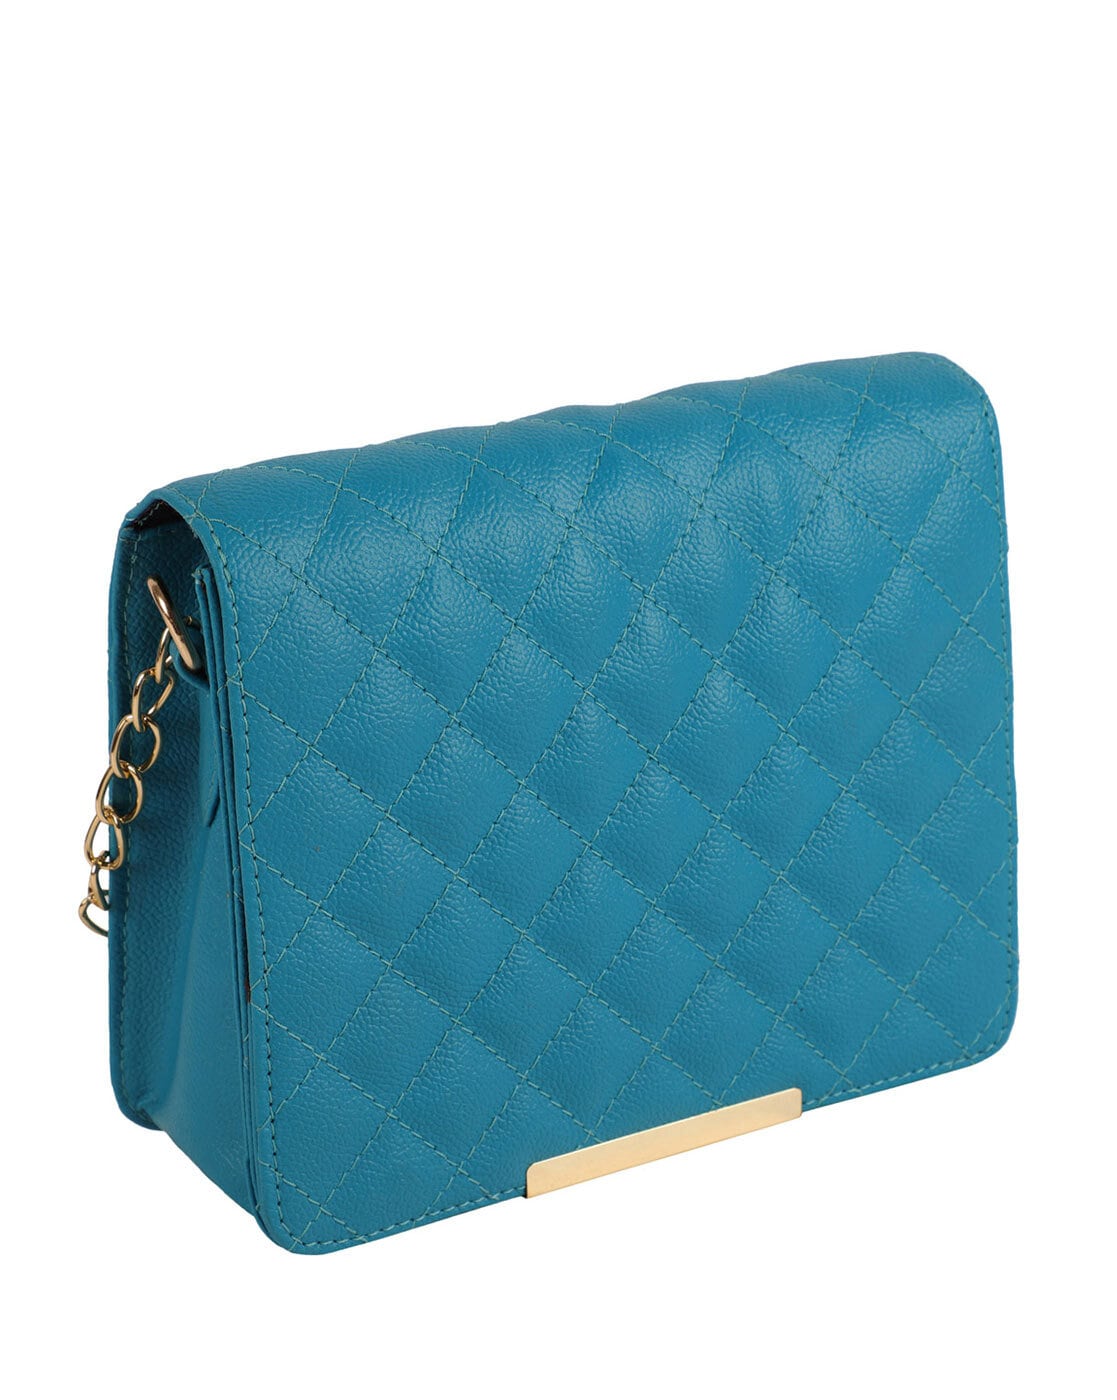 Carteras Nuevas de Mujer Marca bebe / New handbags for women bebe brand |  eBay